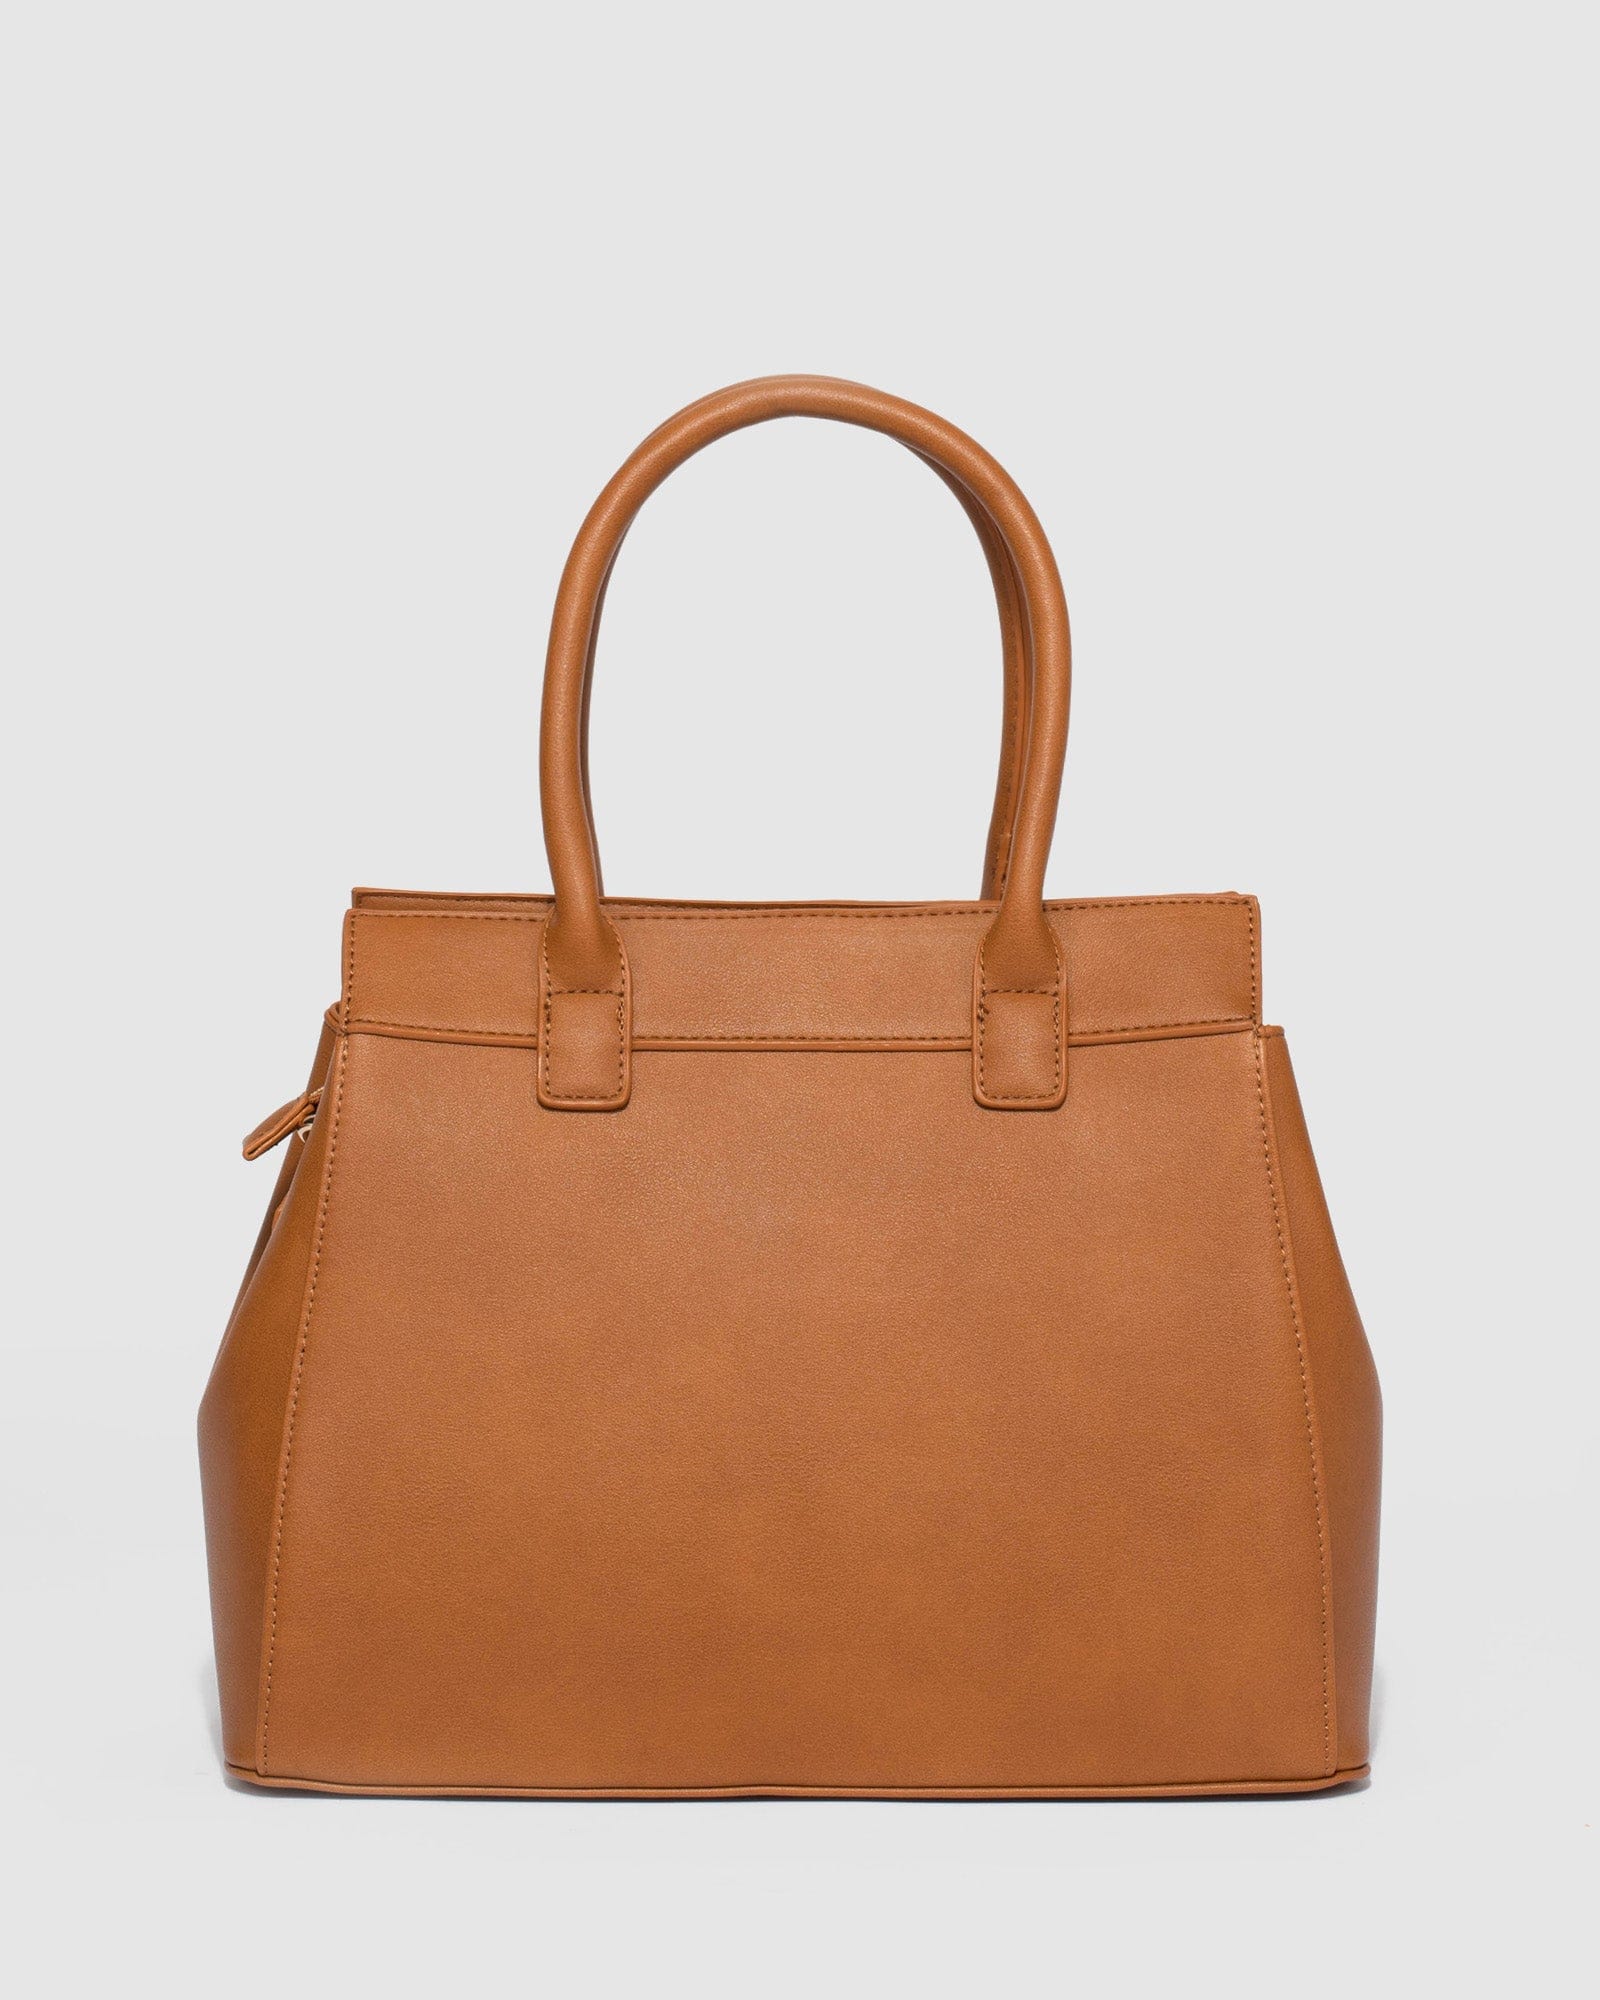 Colette by Colette Hayman Brown Shoulder Bag Medium Handbag | eBay